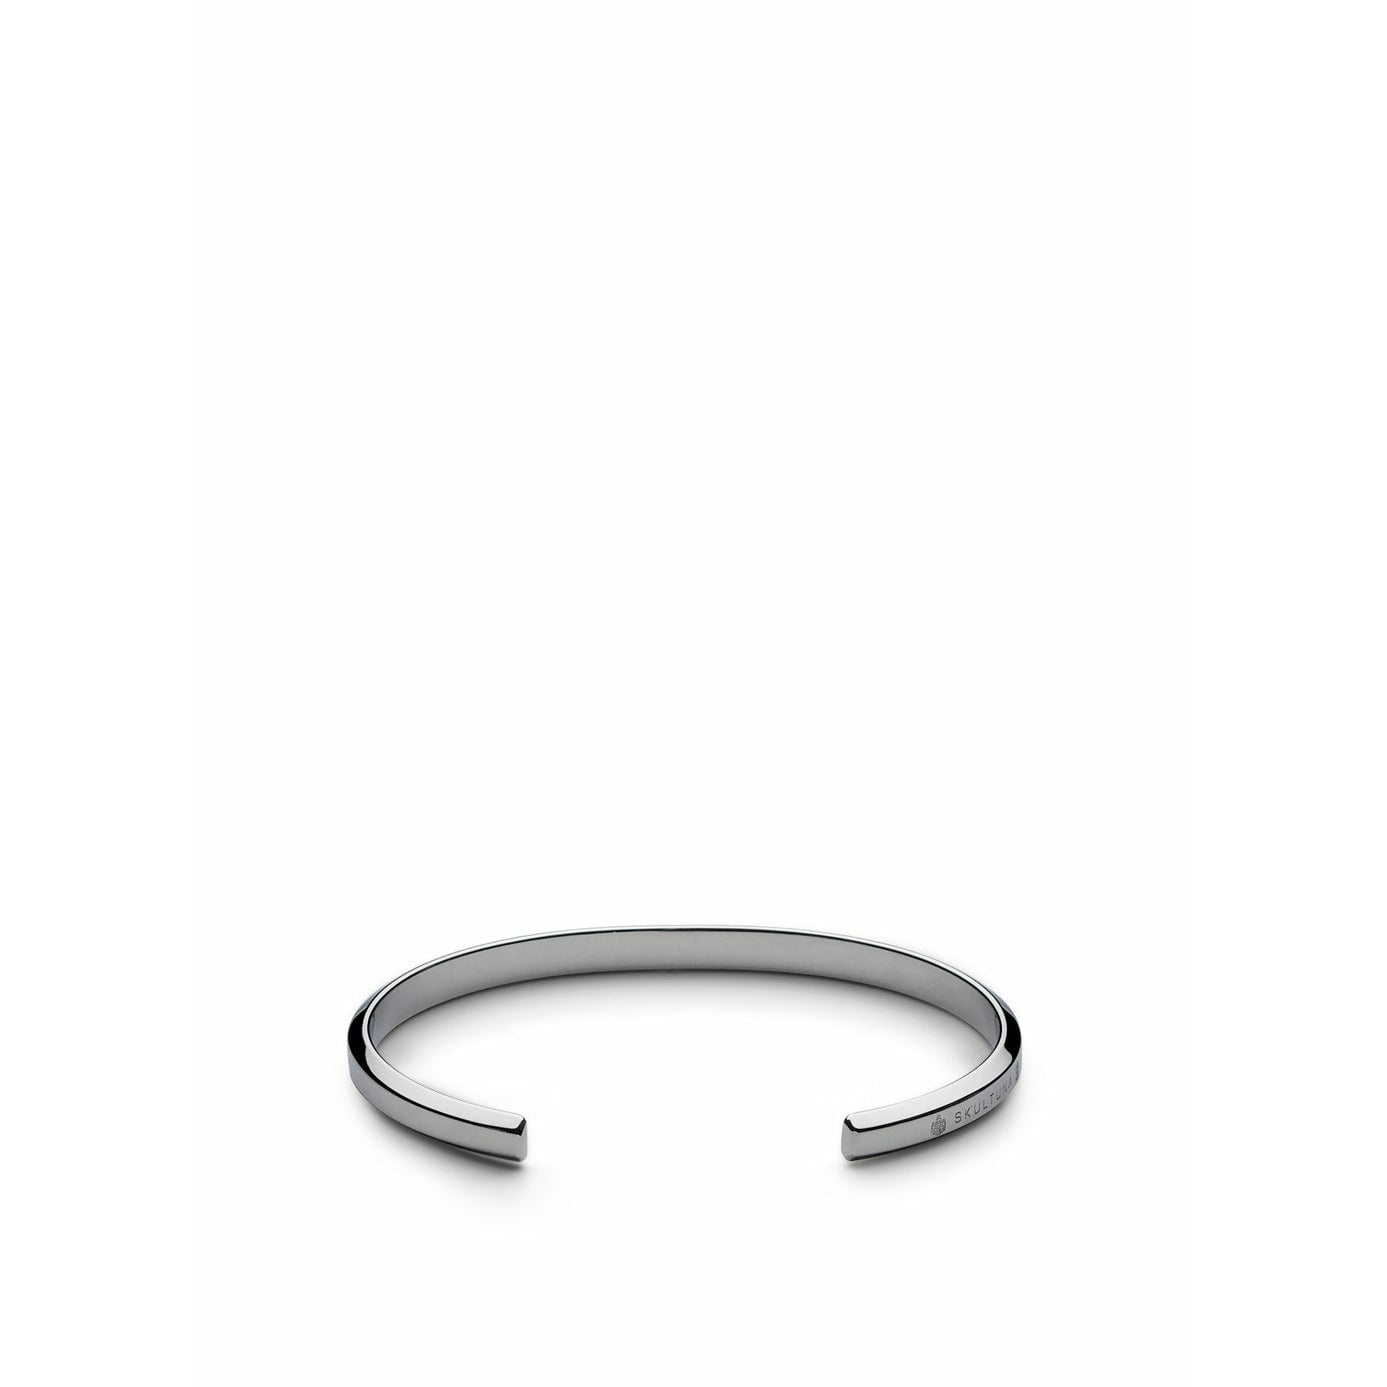 Skultuna图标薄手链中型抛光钢Ø16,5厘米，银